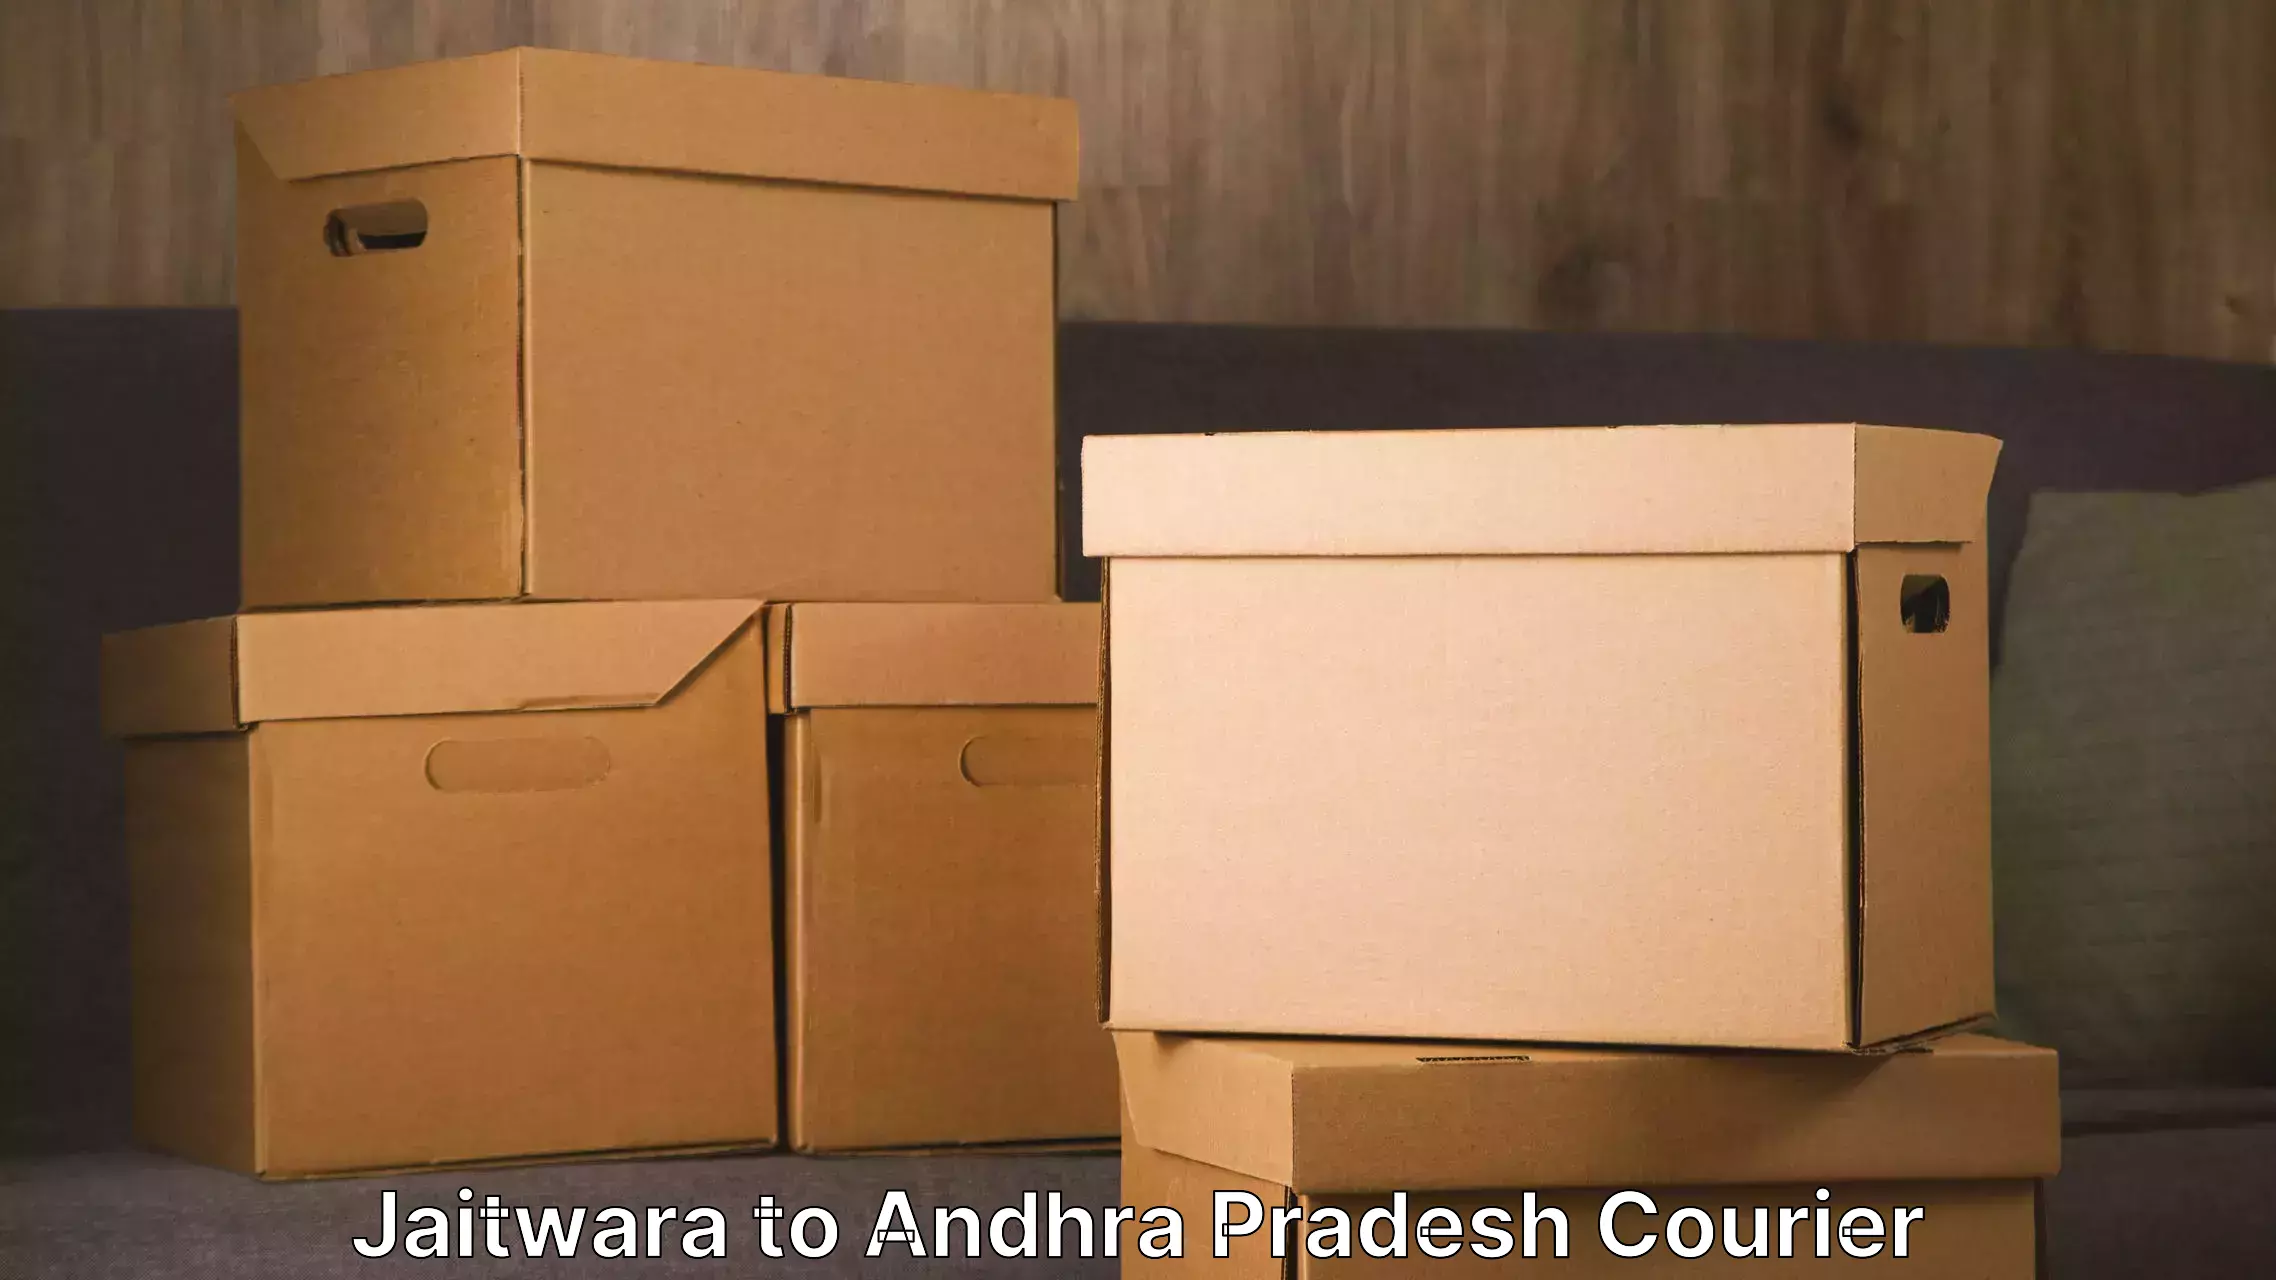 Furniture transport and storage Jaitwara to Palasa